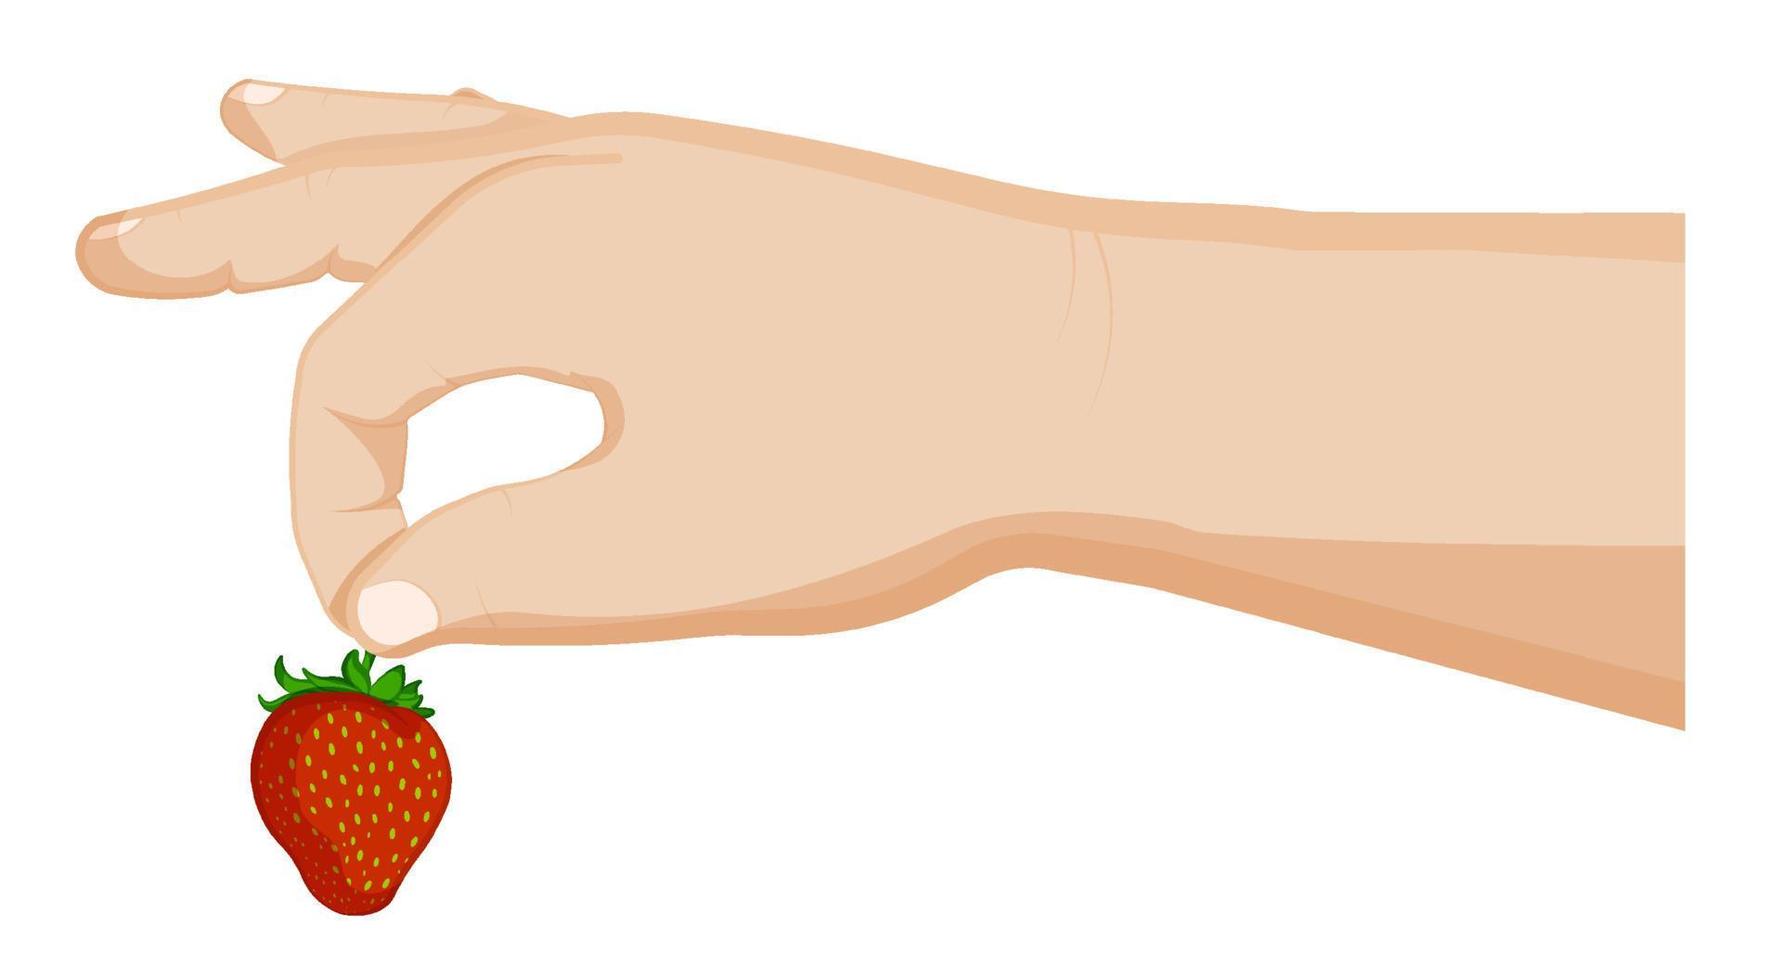 la mano del niño sostiene una fresa. bayas de verano, frutas jugosas maduras. cocinar postres. vector de dibujos animados sobre fondo blanco